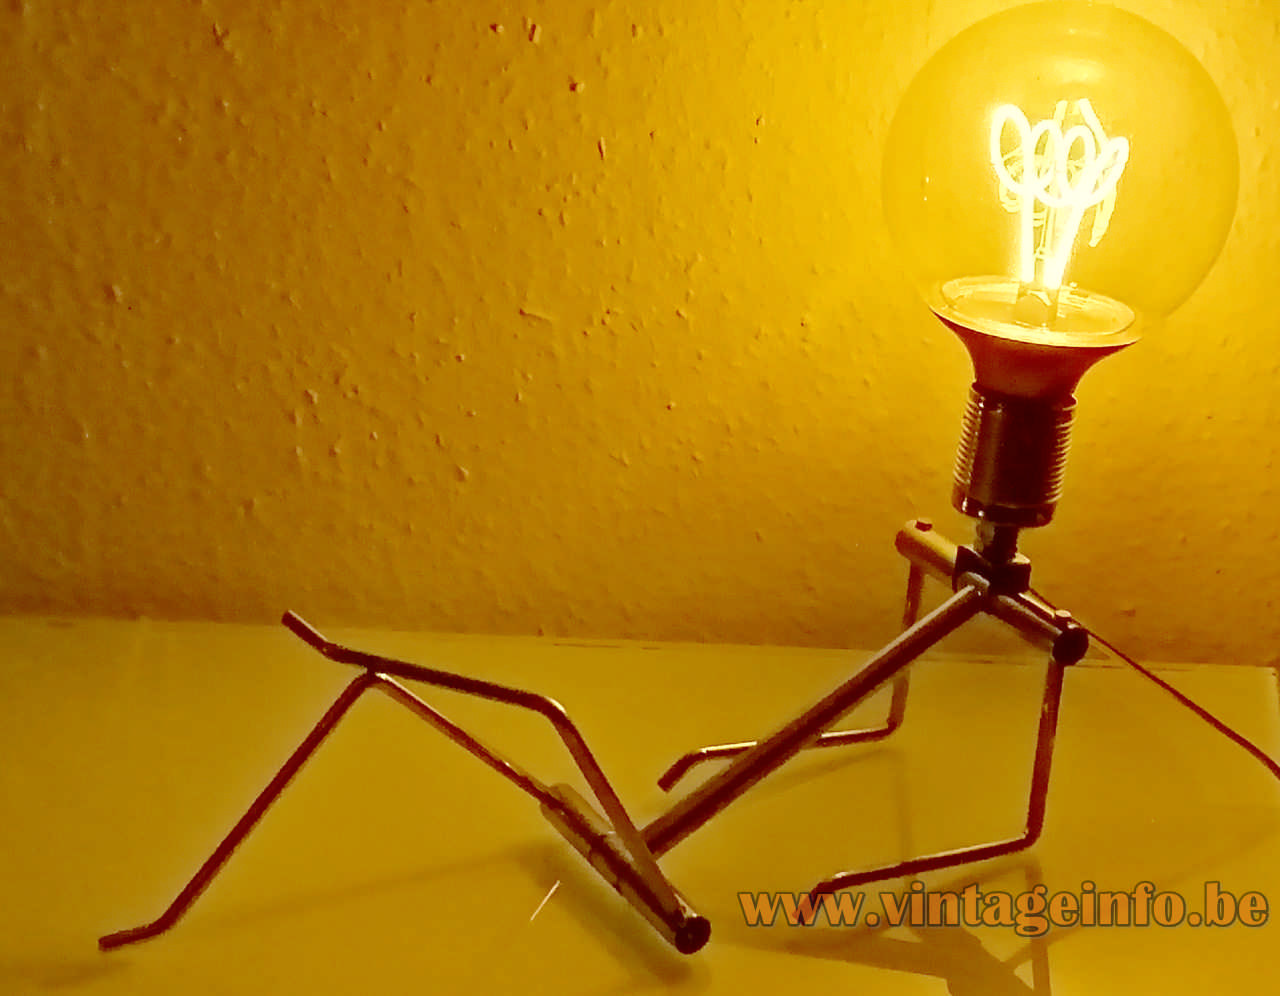 Hank Kwint Adonis table lamp adjustable metal wire figurine-robot 1983 design KwinterArt Netherlands E27 socket